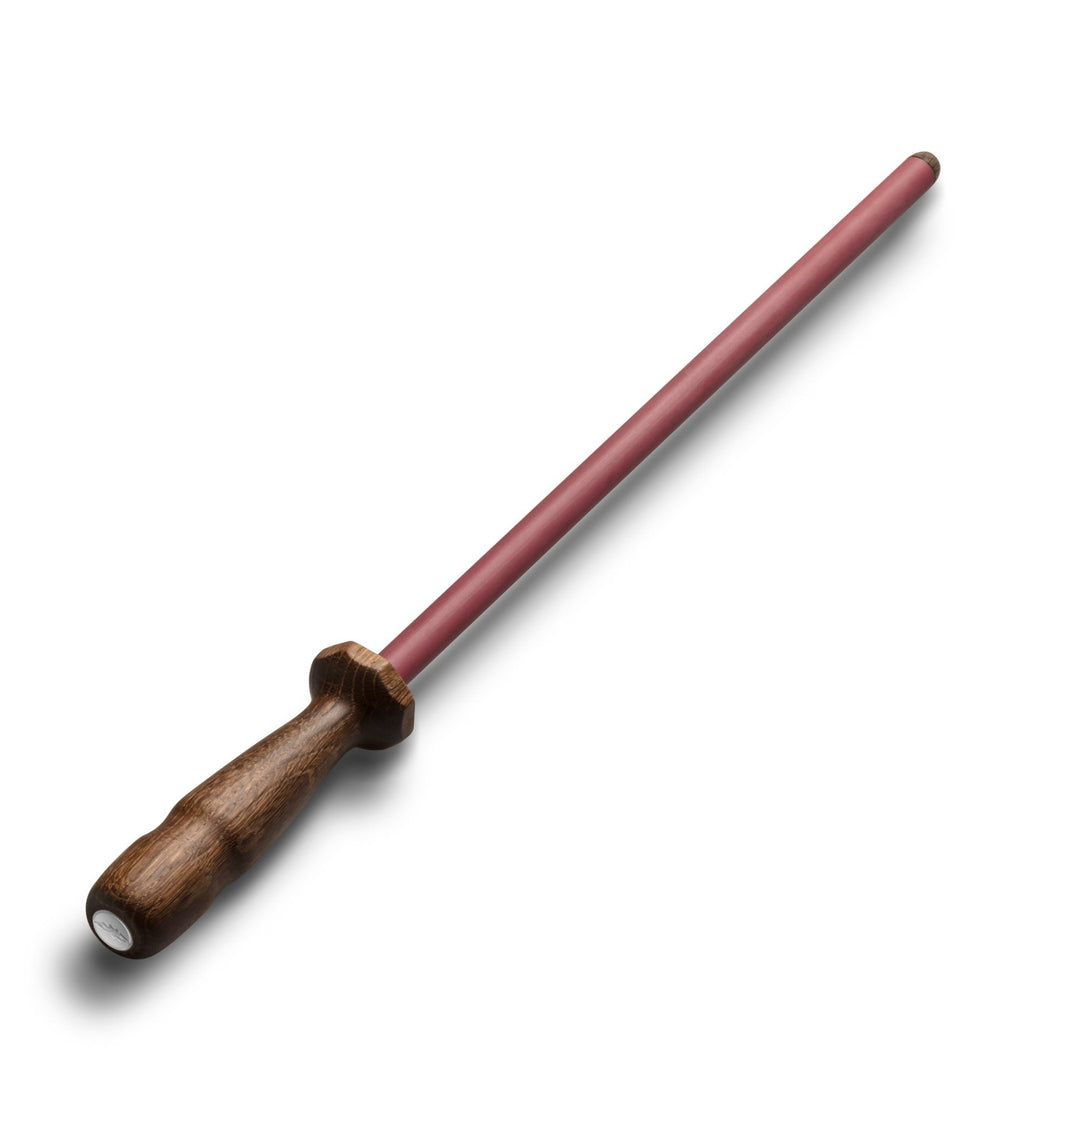 Abbildung eines Nesmuk Schärfstabes mit Holzgriff und rötlichem Schaft, konzipiert zum Messerschärfen, schräg liegend auf weißem Untergrund.